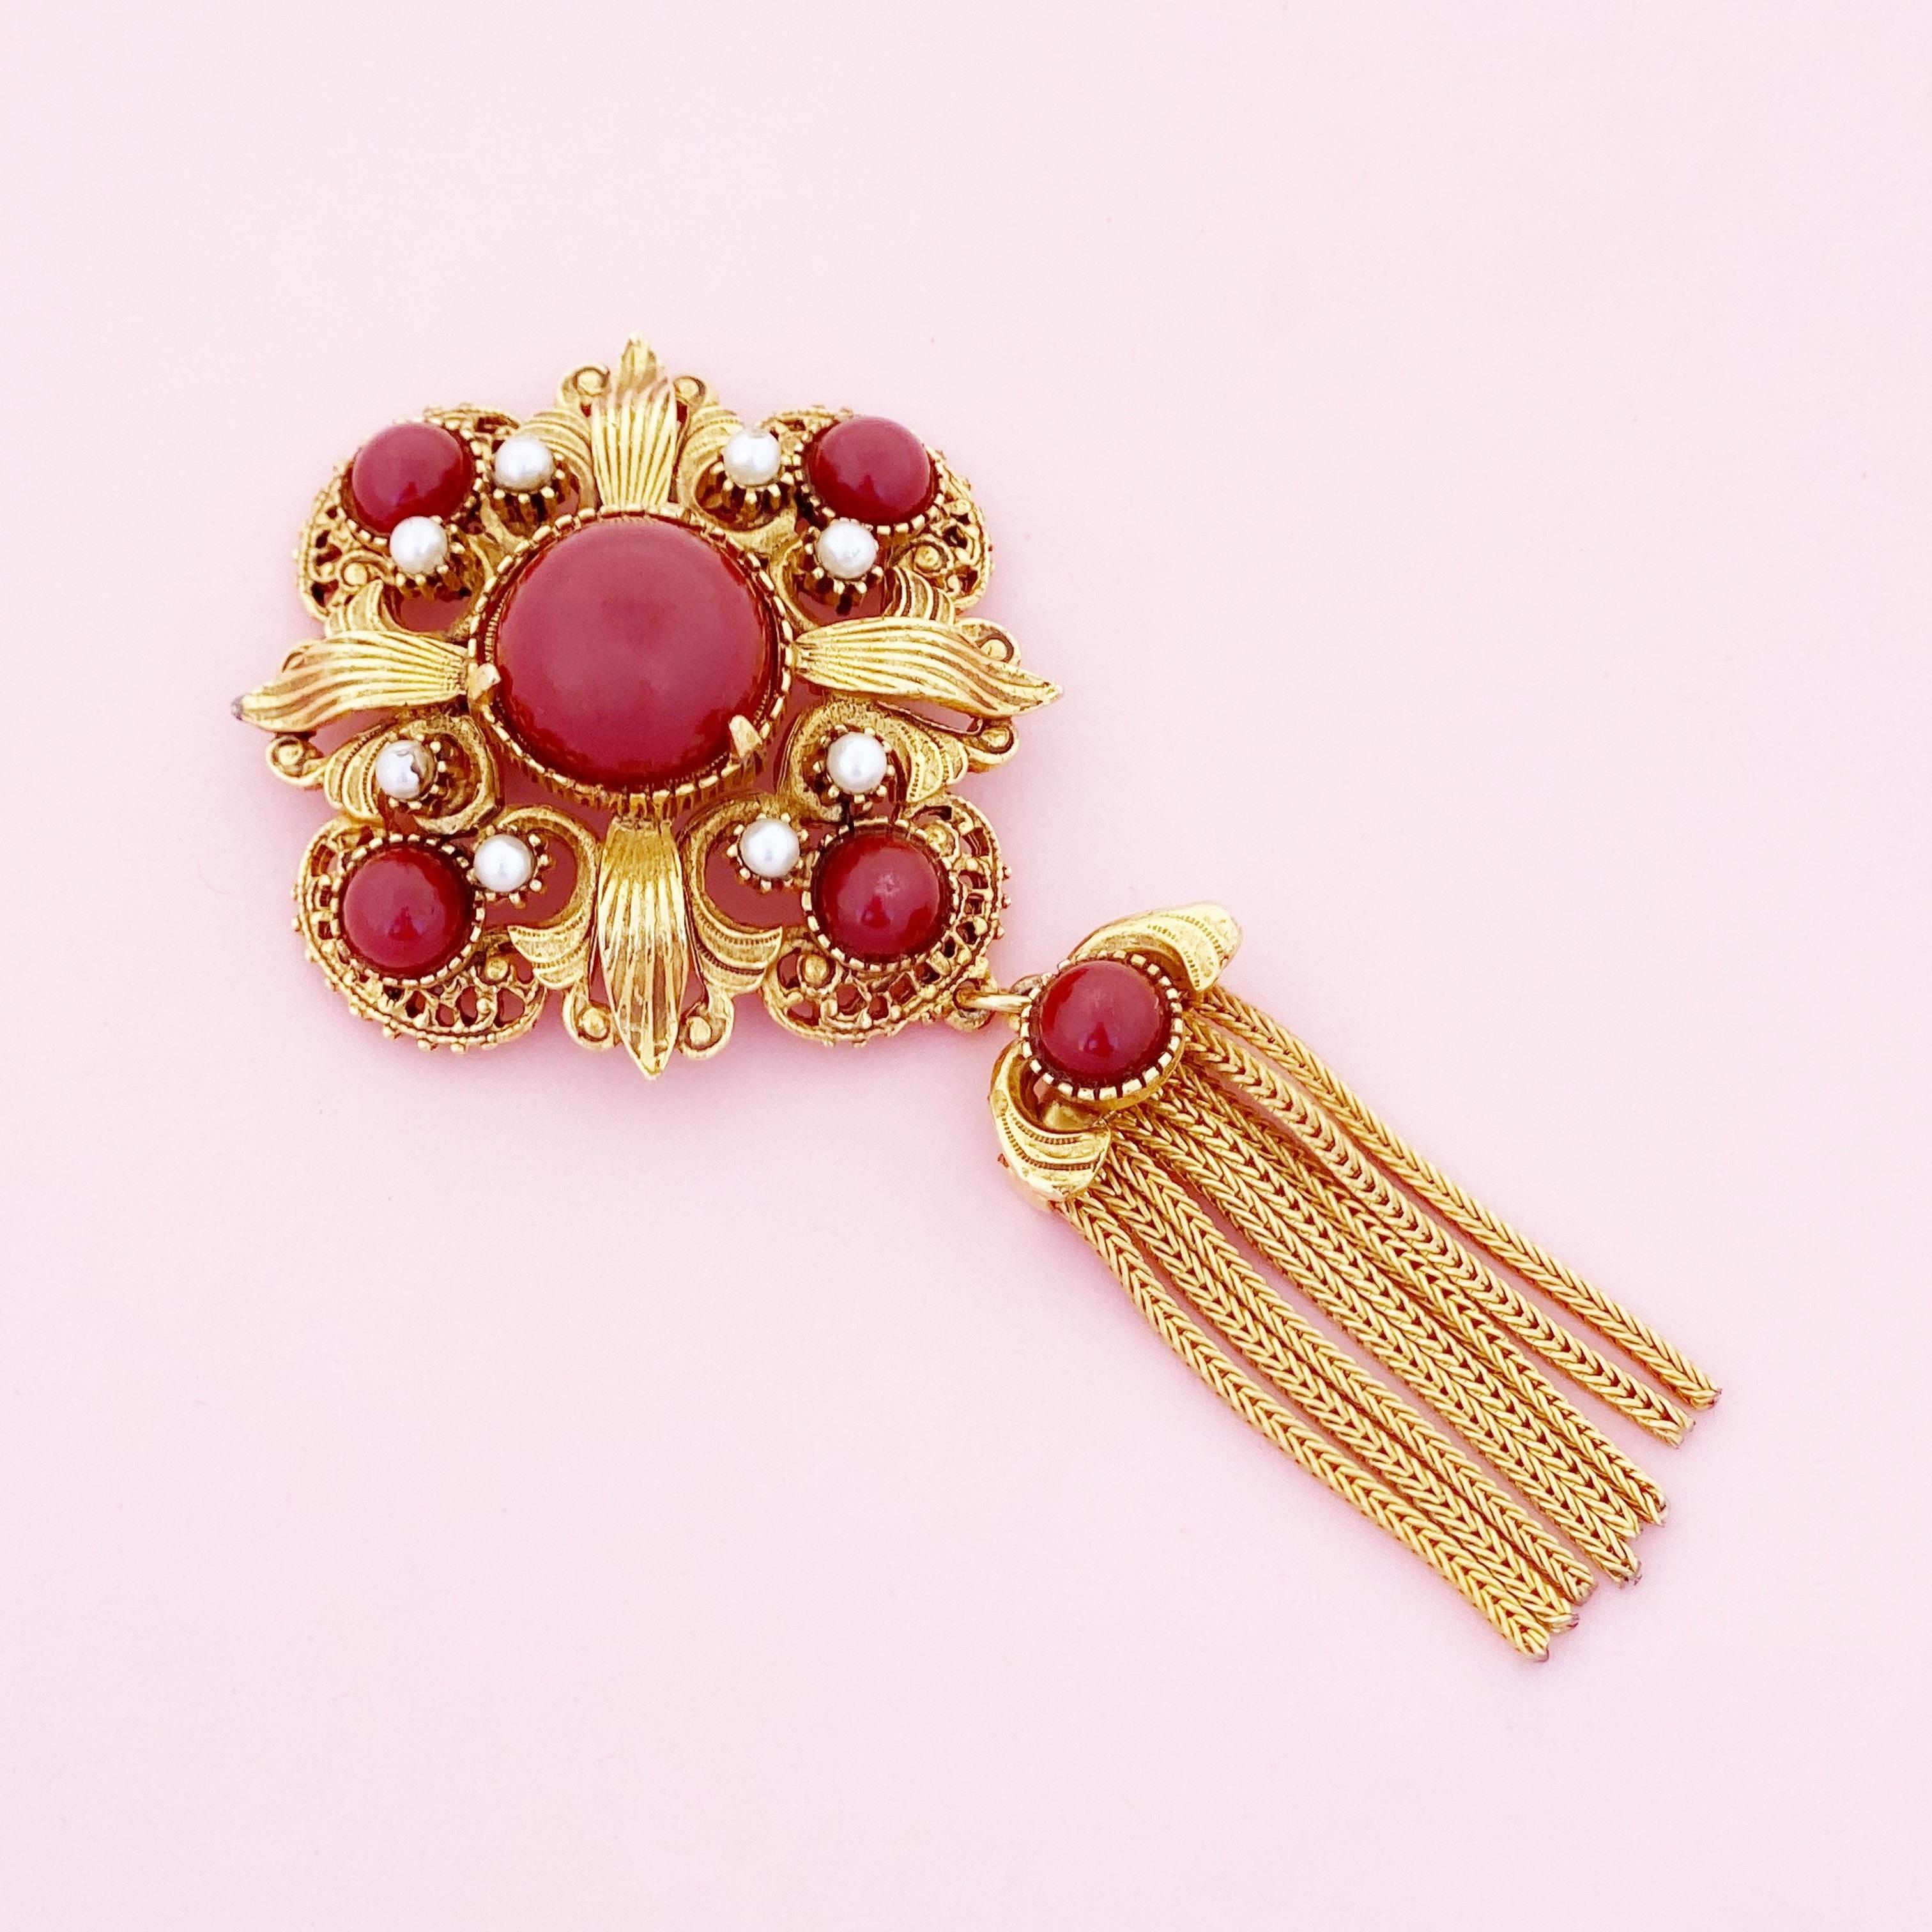 Modern Ornate Medallion Brooch w Red Cabochons & Gold Fringe Tassel By Florenza, 1970s